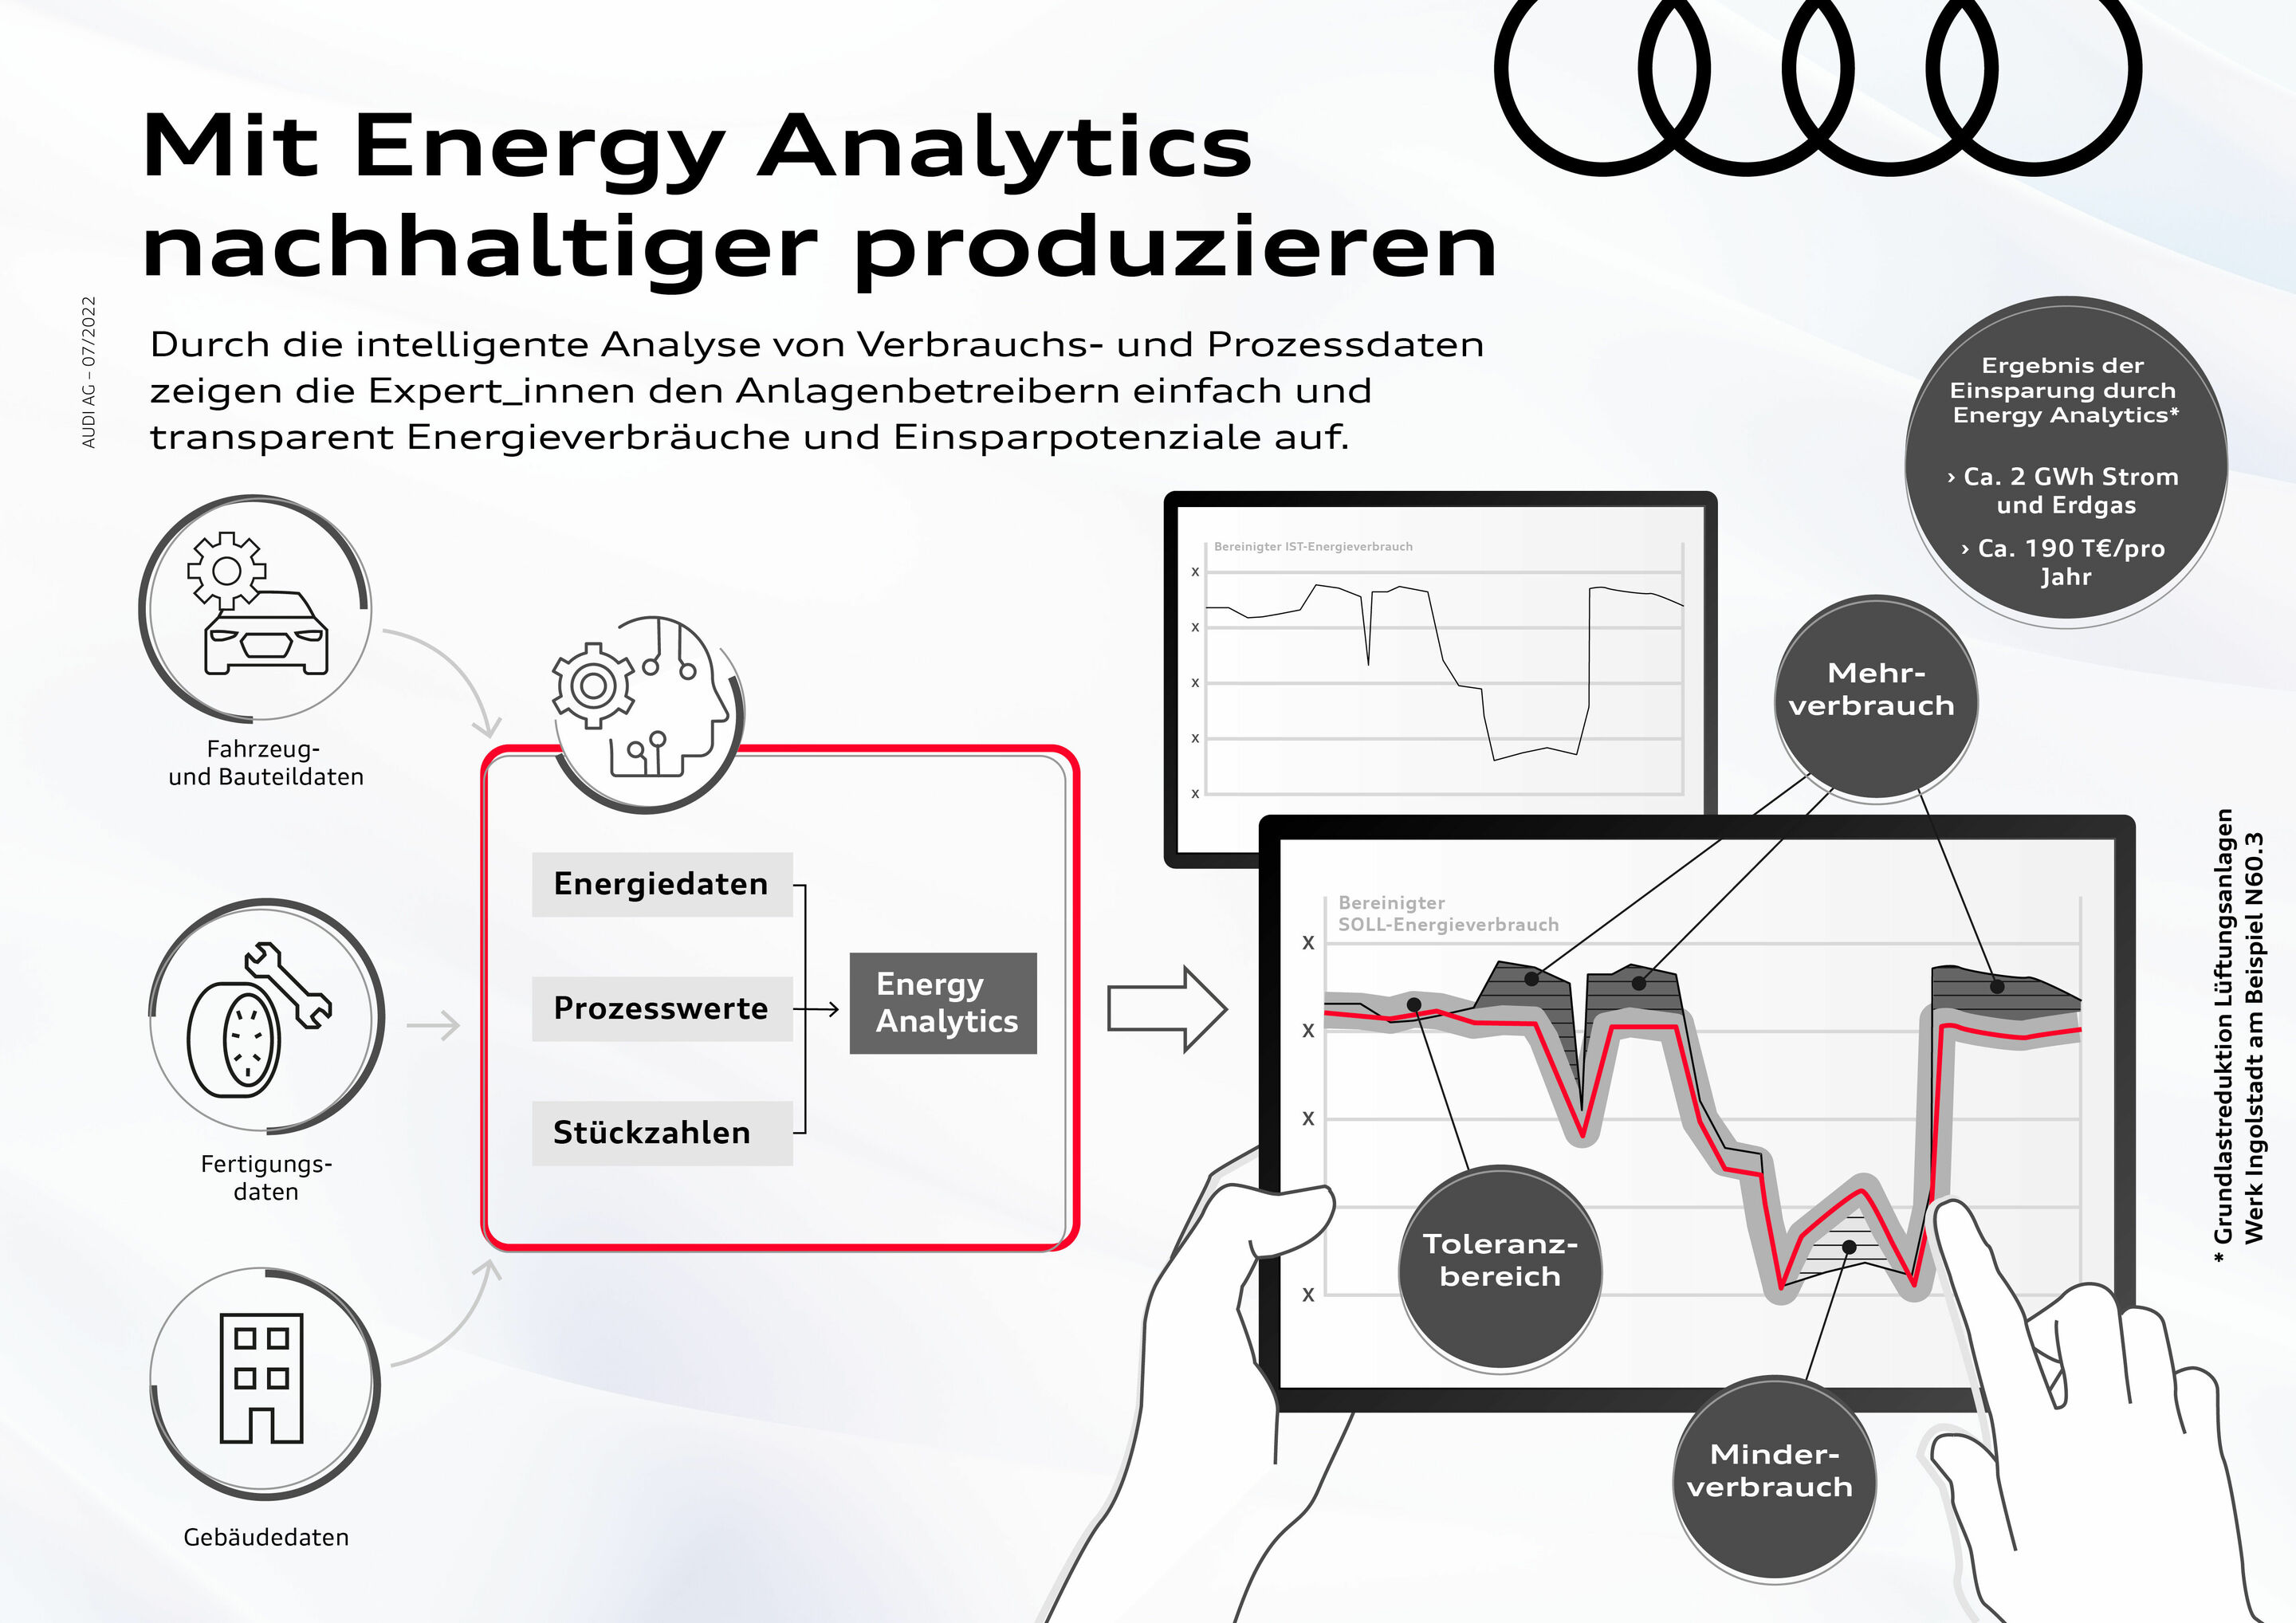 Mit Energy Analytics nachhaltiger produzieren